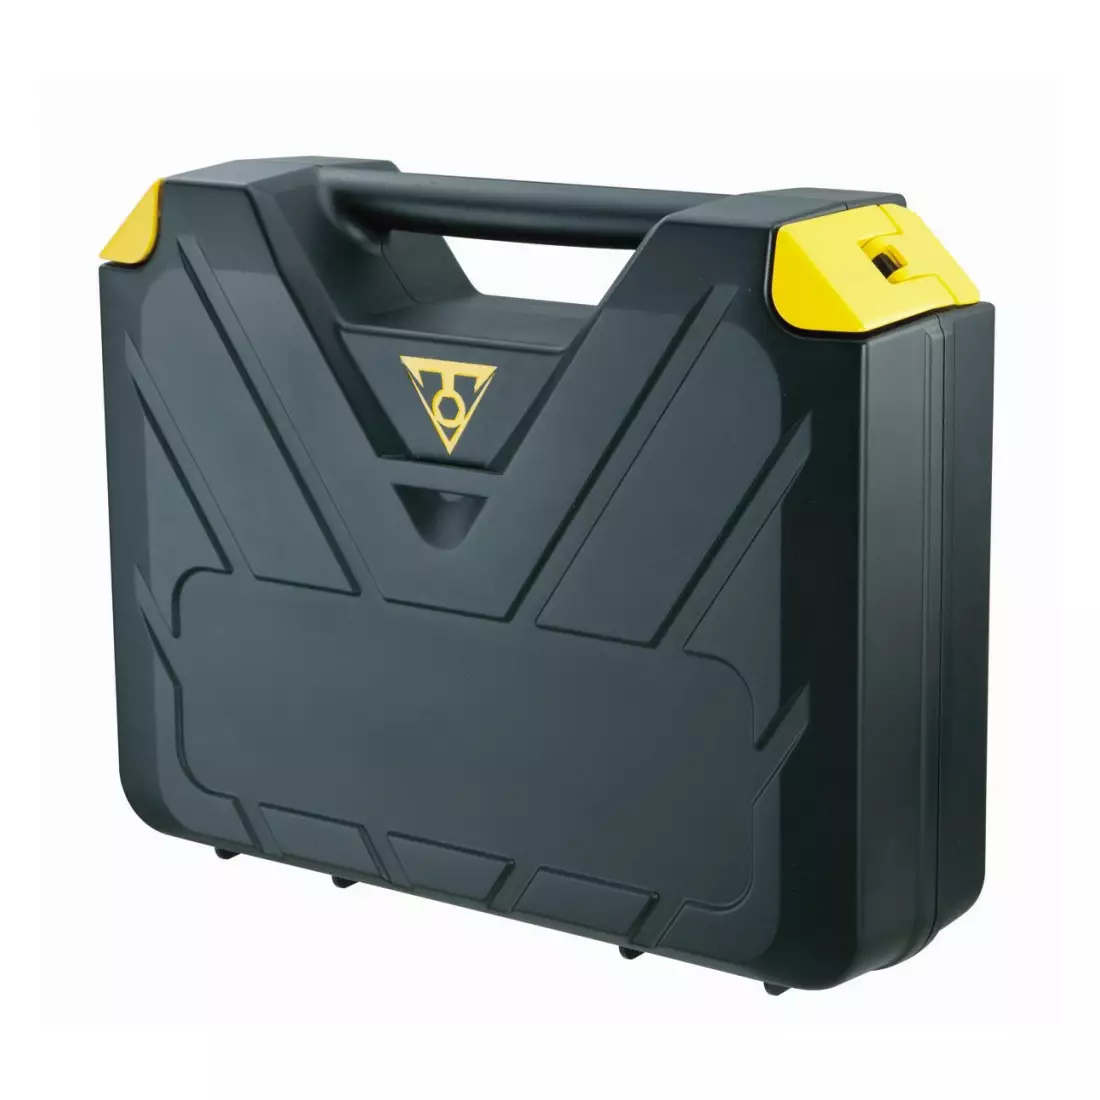 TOPEAK Koffer mit Werkzeugen PREPBOX black T-TPX-02